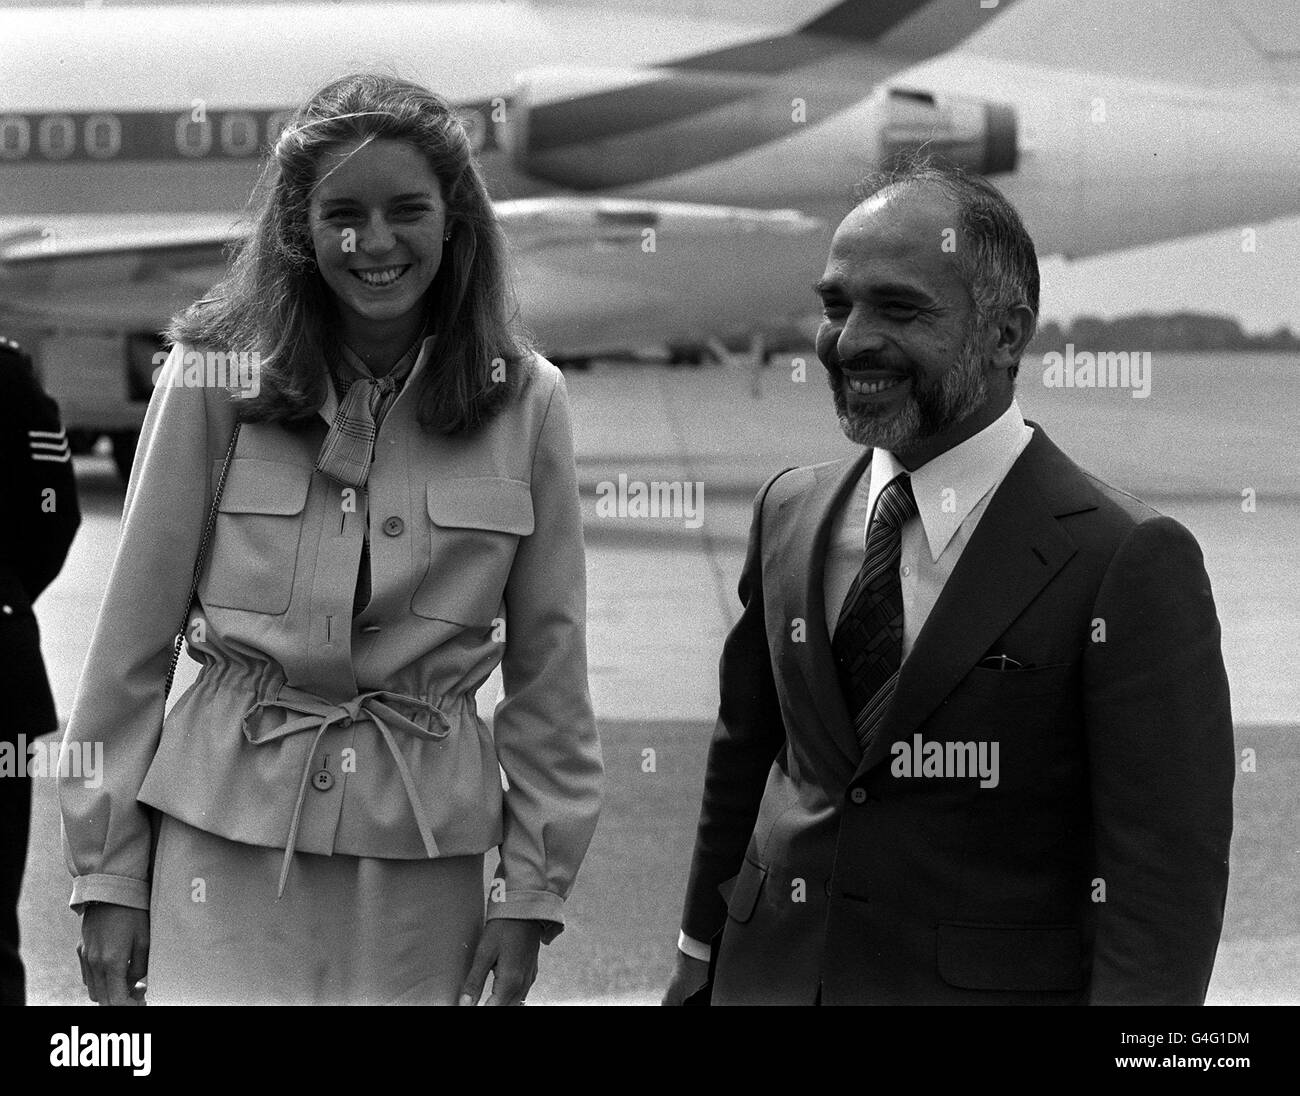 Le roi Hussein de Jordanie et sa mariée de 11 jours, née américaine Lisa Hallaby (Reine Noor) à l'aéroport de Heathrow, lorsqu'ils sont revenus à Londres après leur lune de miel en Écosse. R/I: 22/08/1993. 05/02/1999: Le roi Hussein est gravement malade du cancer et doit arriver dans sa patrie après une greffe de moelle osseuse infructueuse dans un hôpital américain. Accompagné de sa femme et de membres de sa famille, le roi ne voyageait à la maison que 10 jours après qu'il s'était brusquement rendu aux États-Unis pour chercher des soins pour une rechute du cancer lymphatique. Banque D'Images